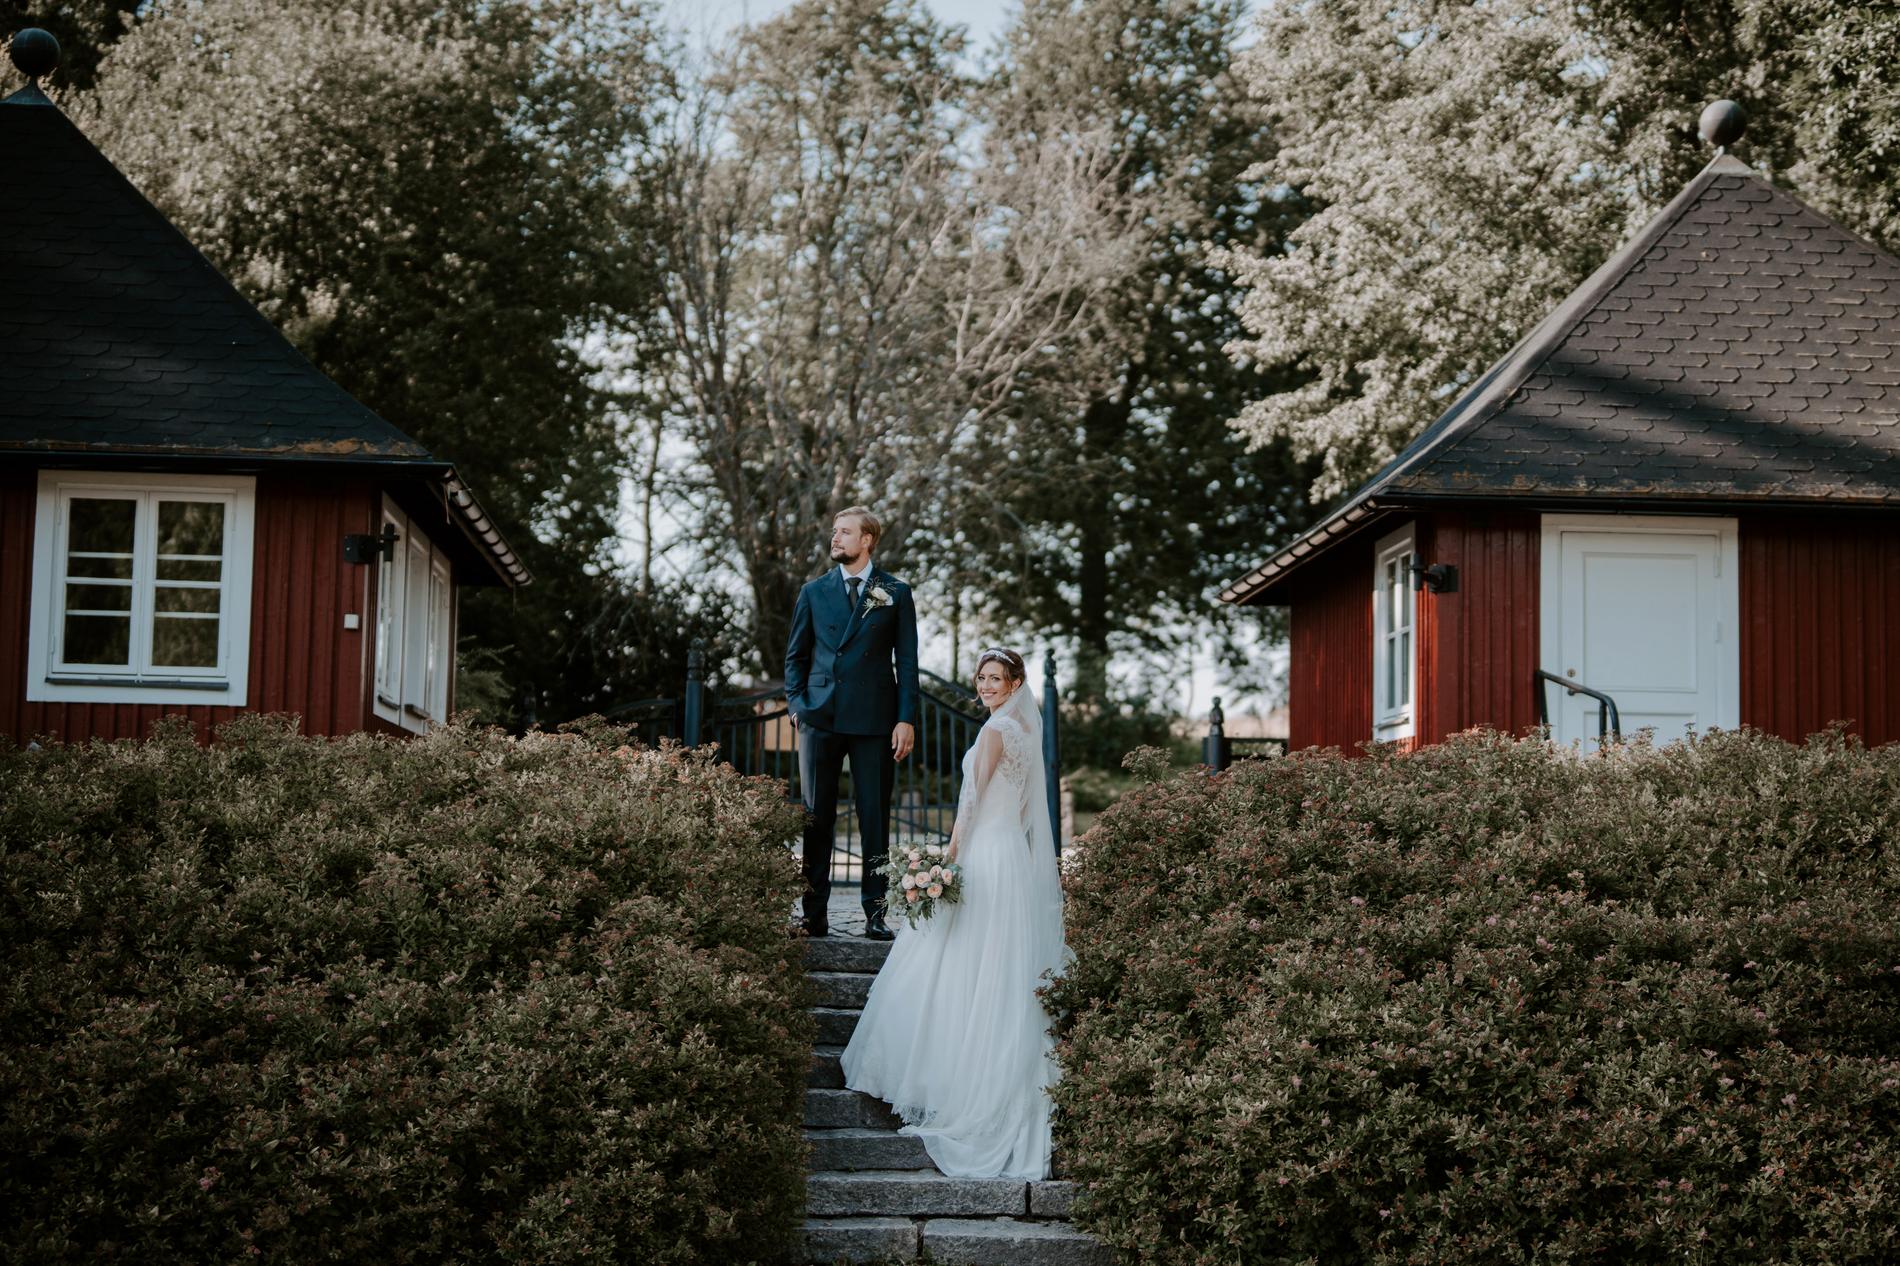 Bröllopet mellan Kristoffer Olofsson och Louise Nordahl ägde rum på skånska Trollenäs slott.